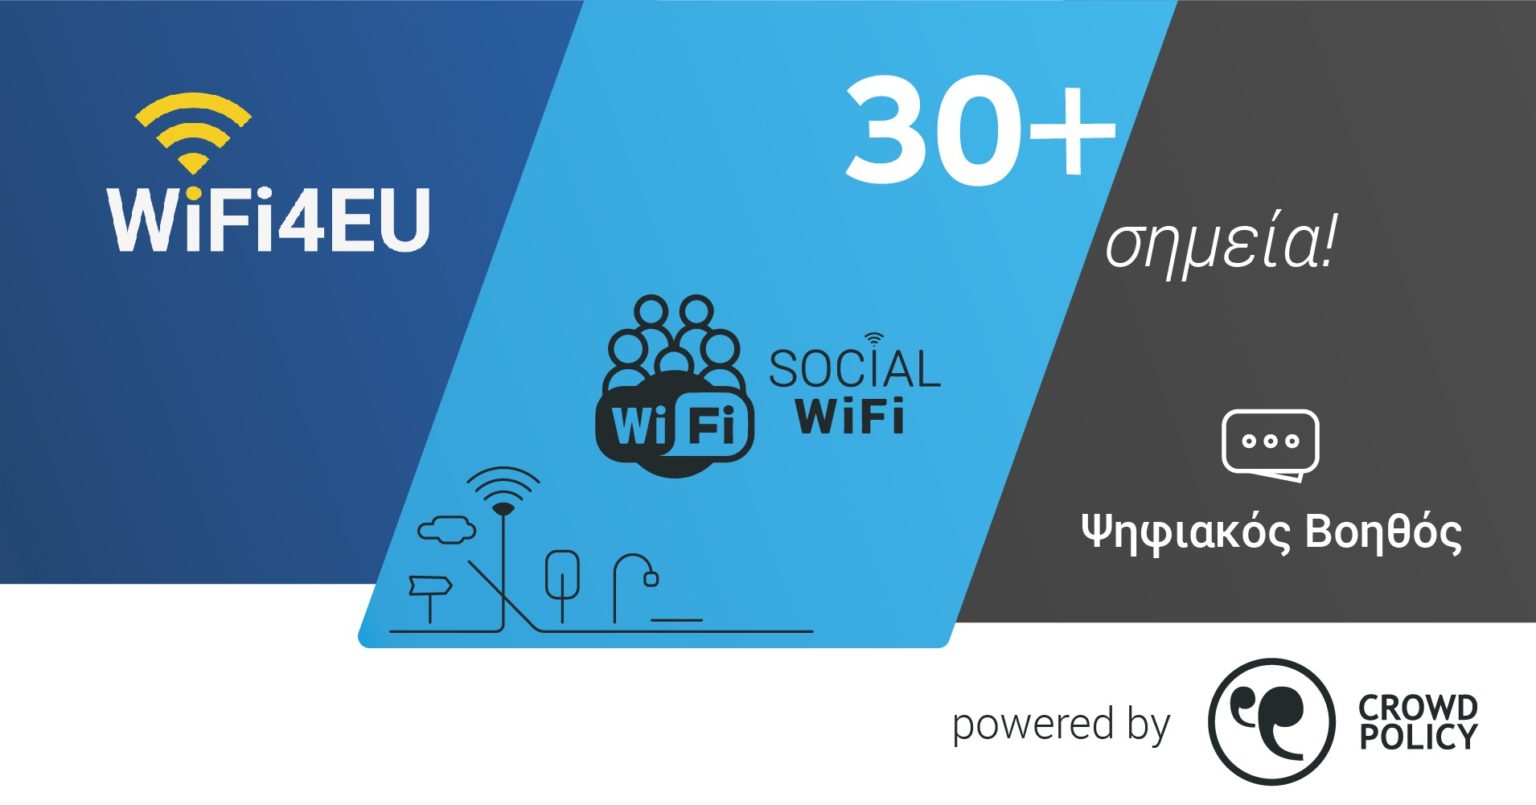 - شبكة لاسلكية للمدن الذكية في اليونان أكثر من 1000 نقطة WiFi4EU مجاني وأوروبا